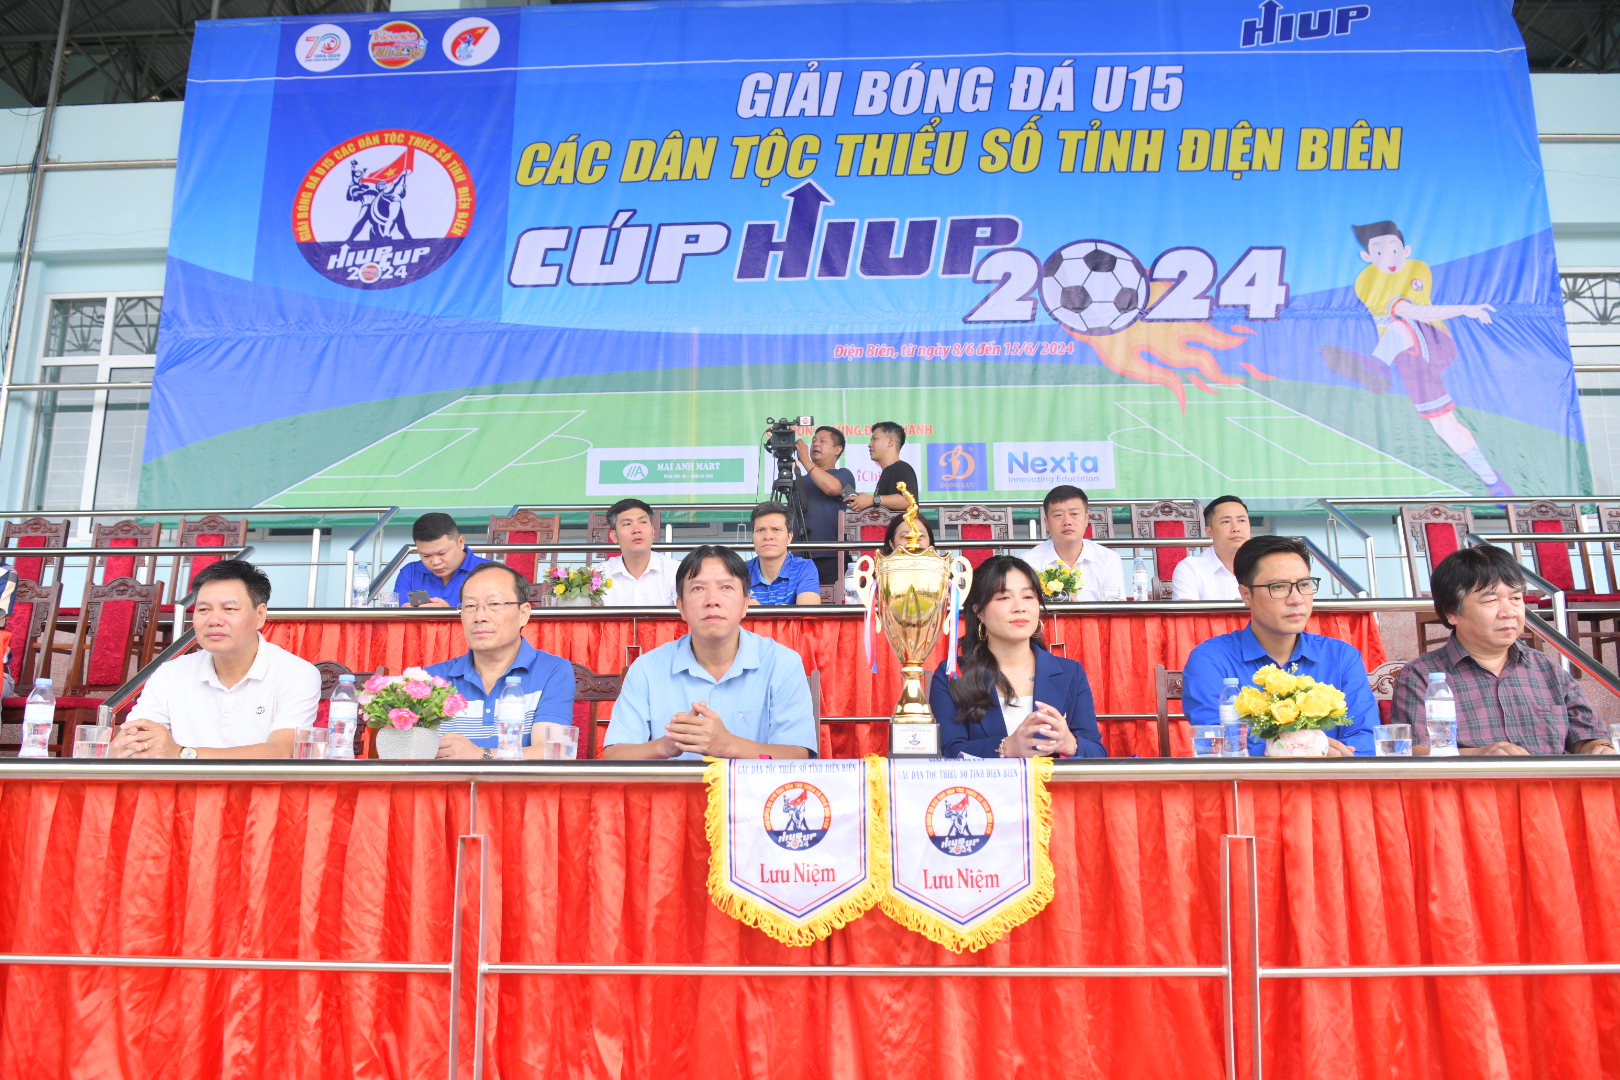 Các đại biểu tham dự Lễ Khai mạc Giải Bóng đá U15 các dân tộc thiểu số tỉnh Điện Biên - Cúp HIUP 2024.